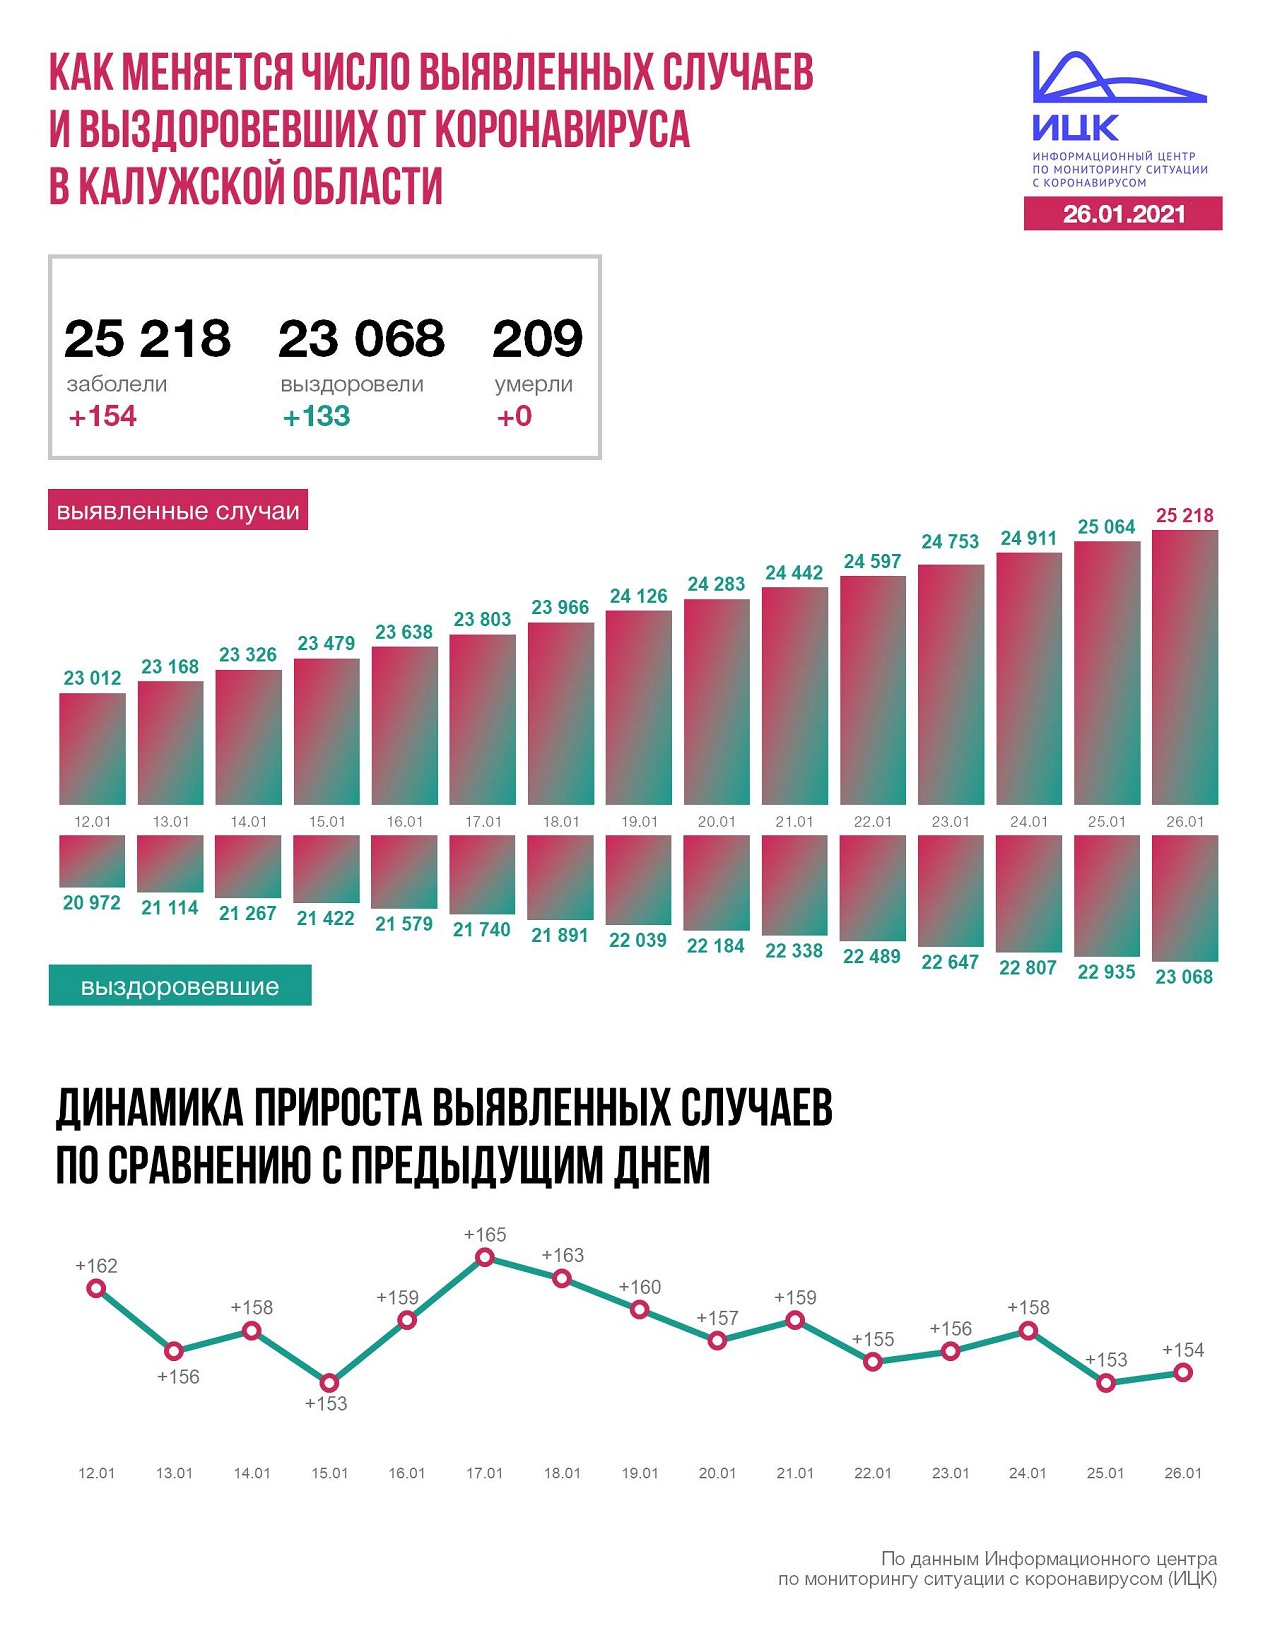 Официальные данные по коронавирусу в Калужской области на 26 января 2021 года.